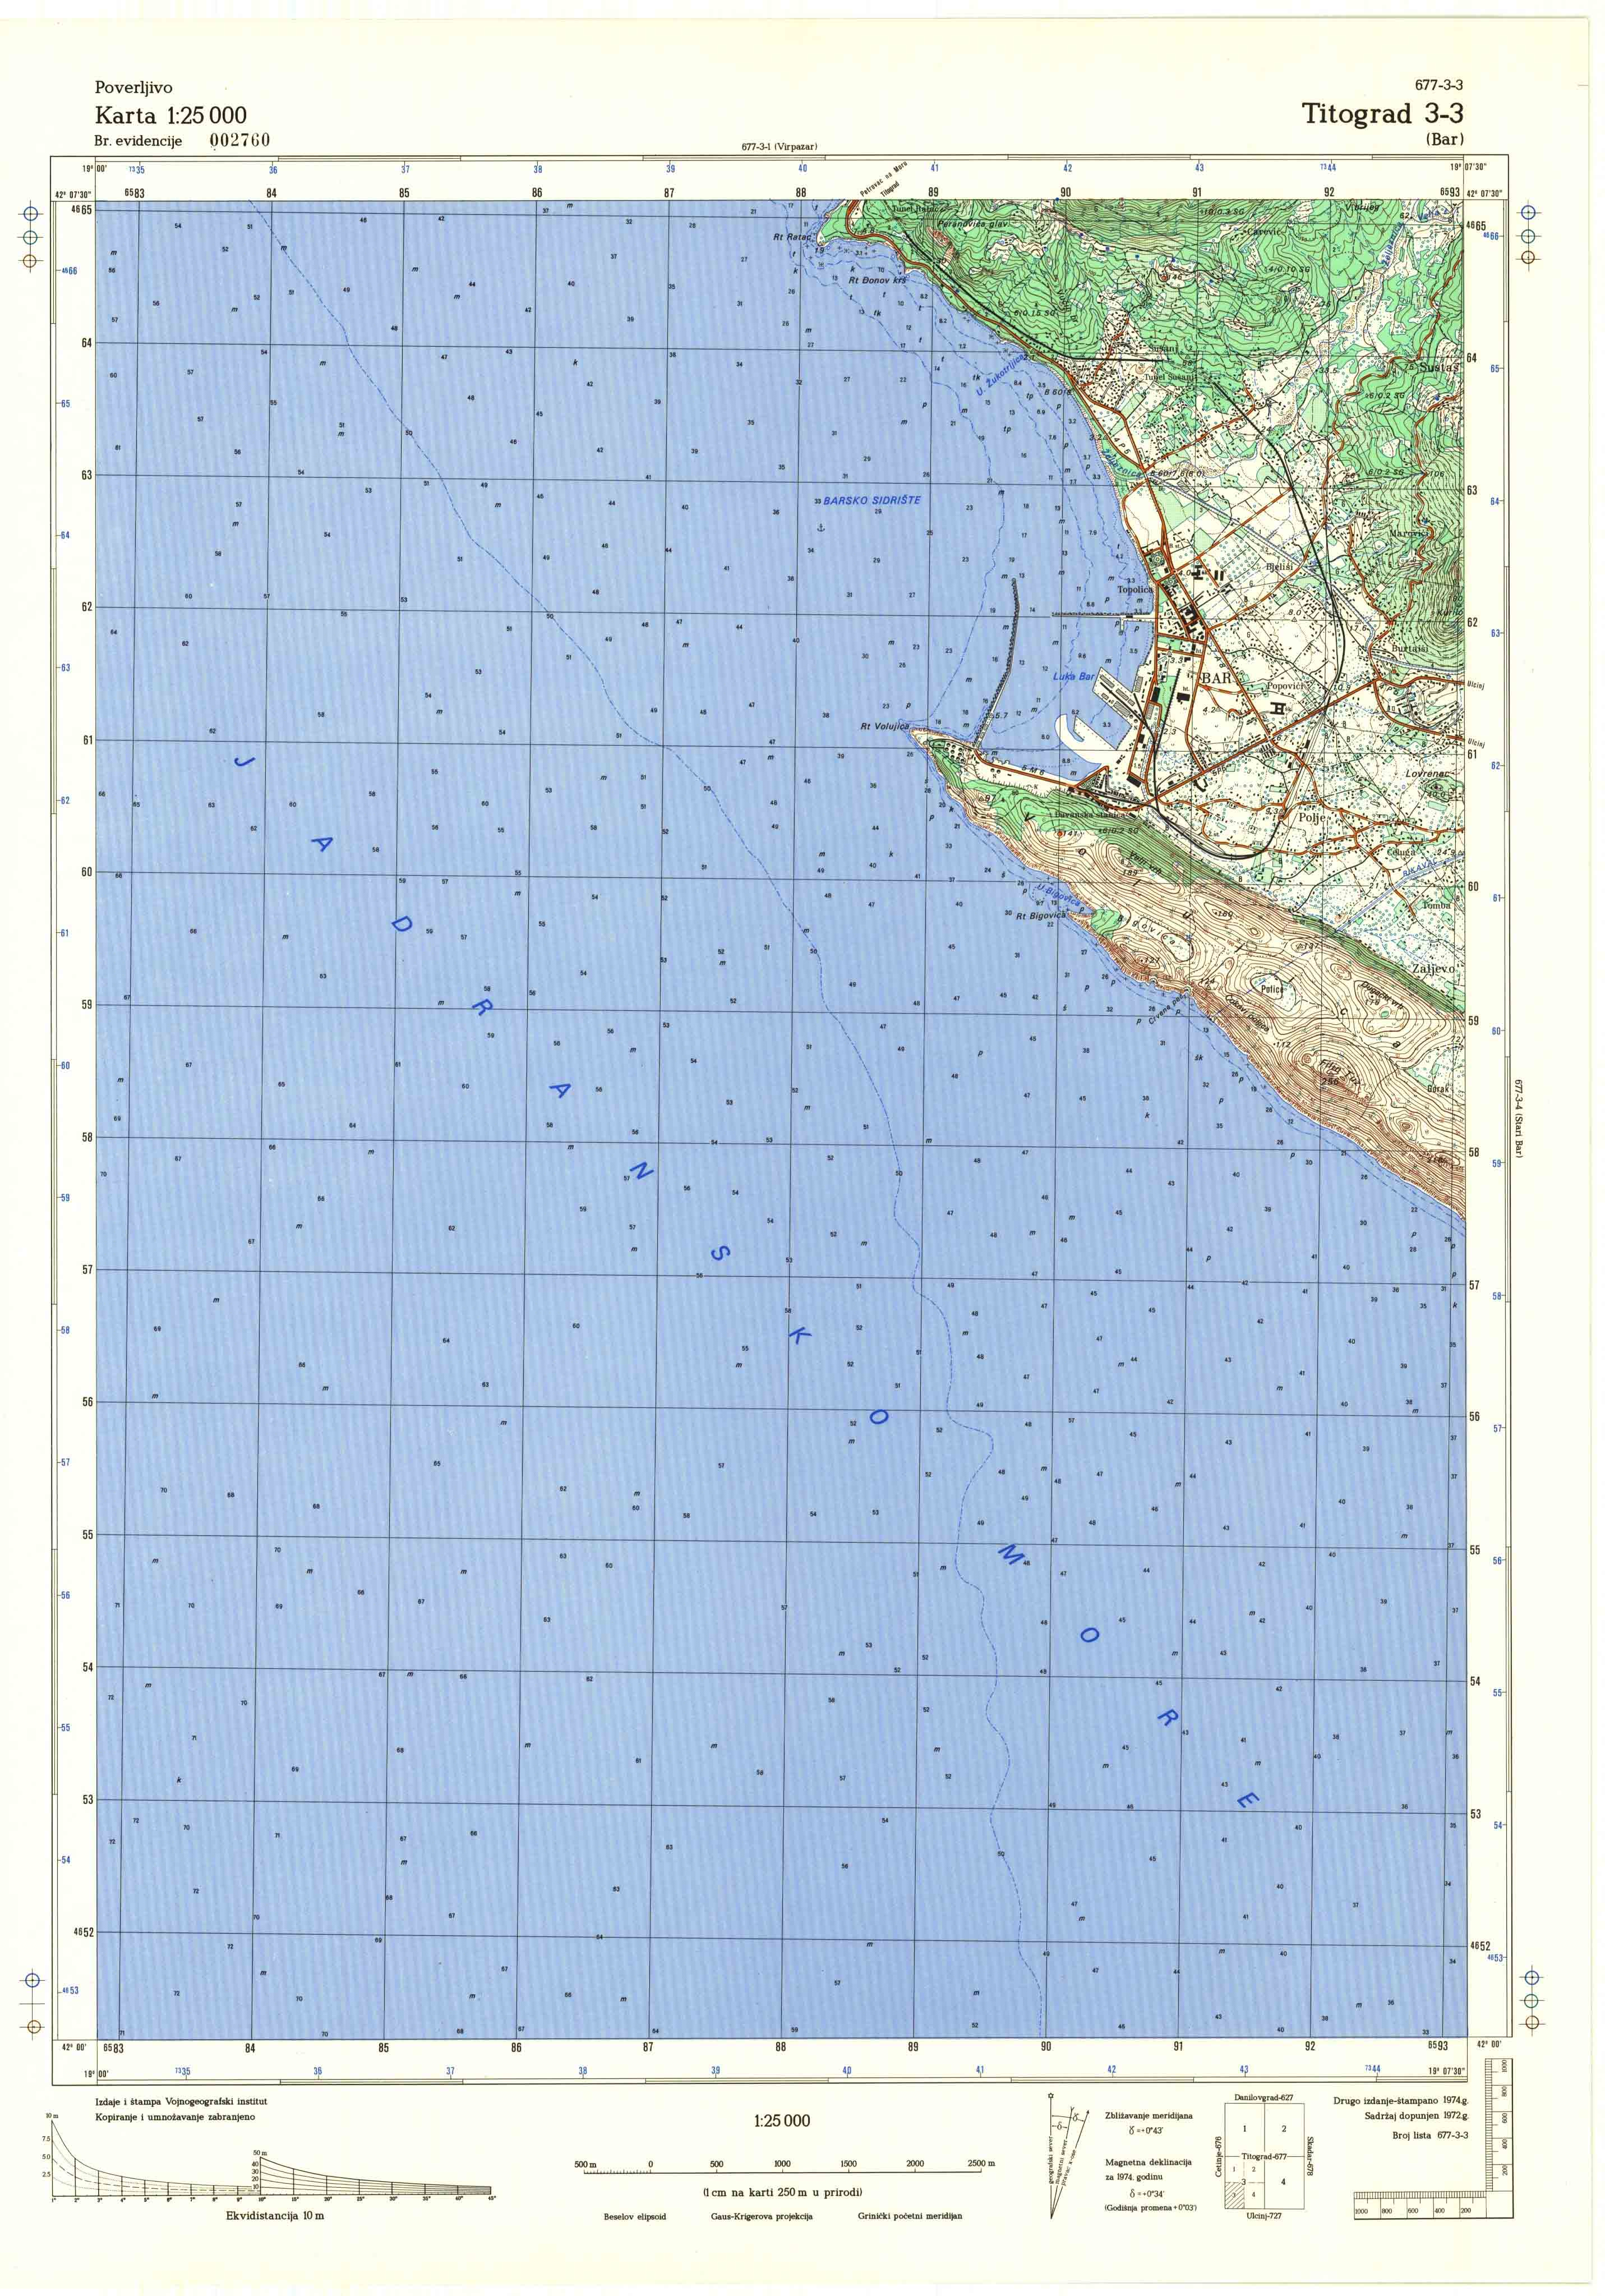  topografska karta crne gore 25000 JNA  Ivangrad